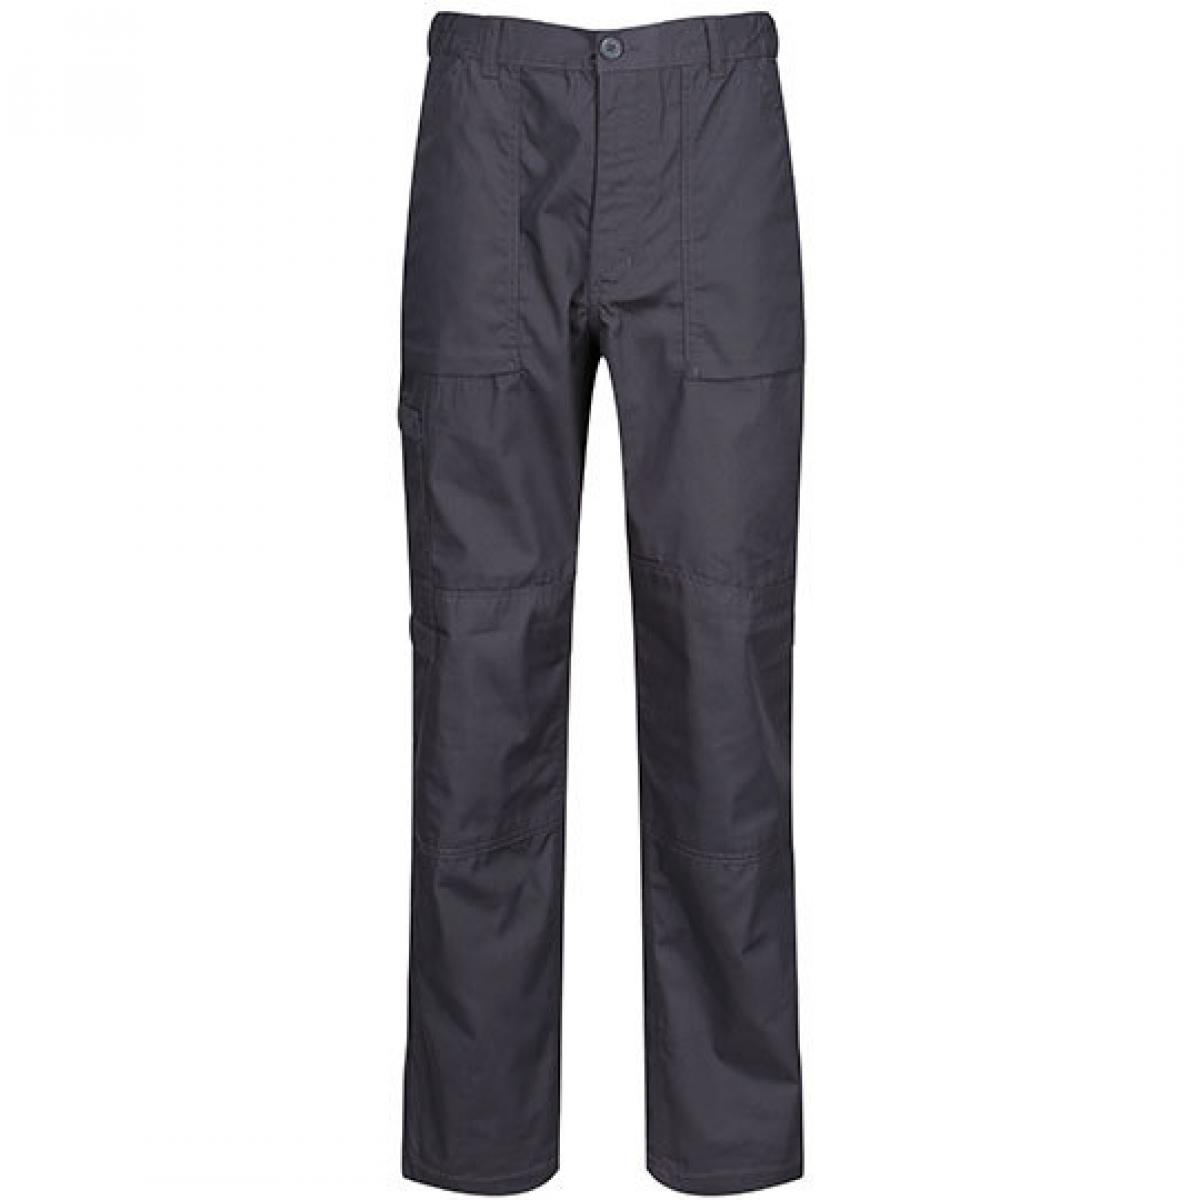 Hersteller: Regatta Herstellernummer: TRJ330 Artikelbezeichnung: Herren Action Trouser Arbeitshose / wasserabweisend Farbe: Dark Grey (Solid)